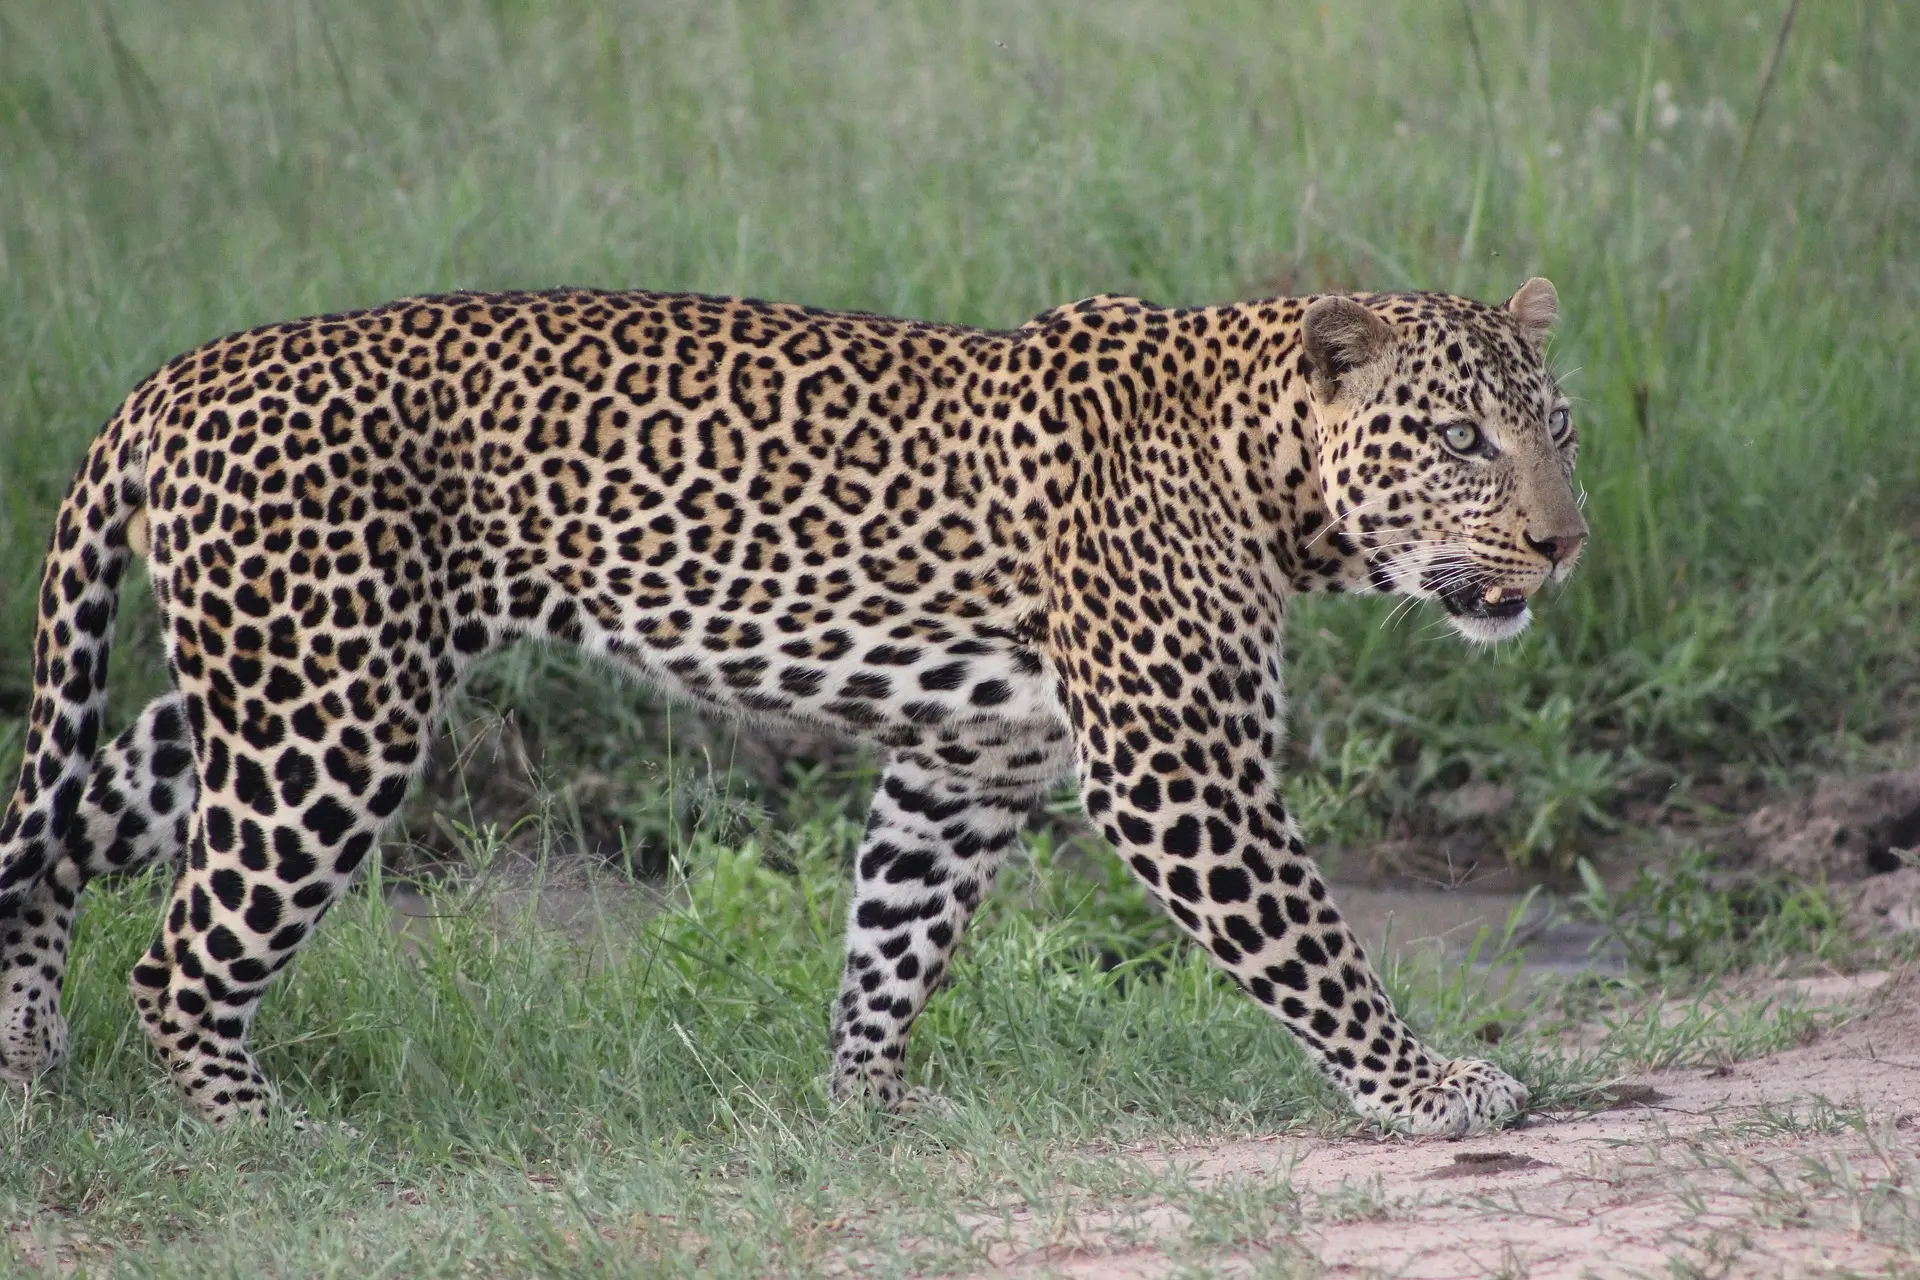 The Leopard, a big cat in Serengeti